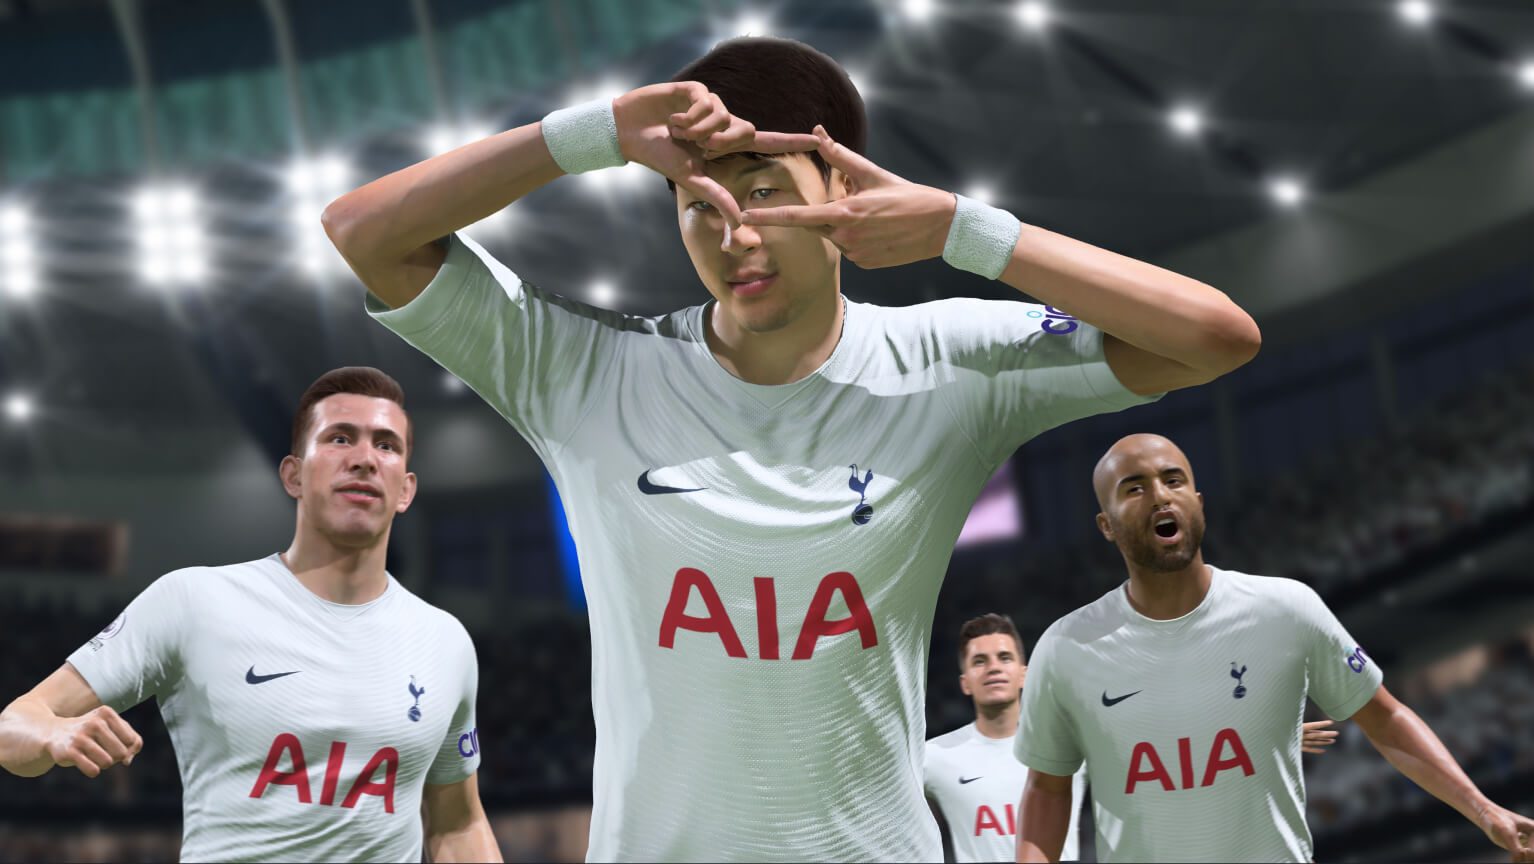 EA Sports divulga jogos da primeira rodada dos playoffs do FIFA 22